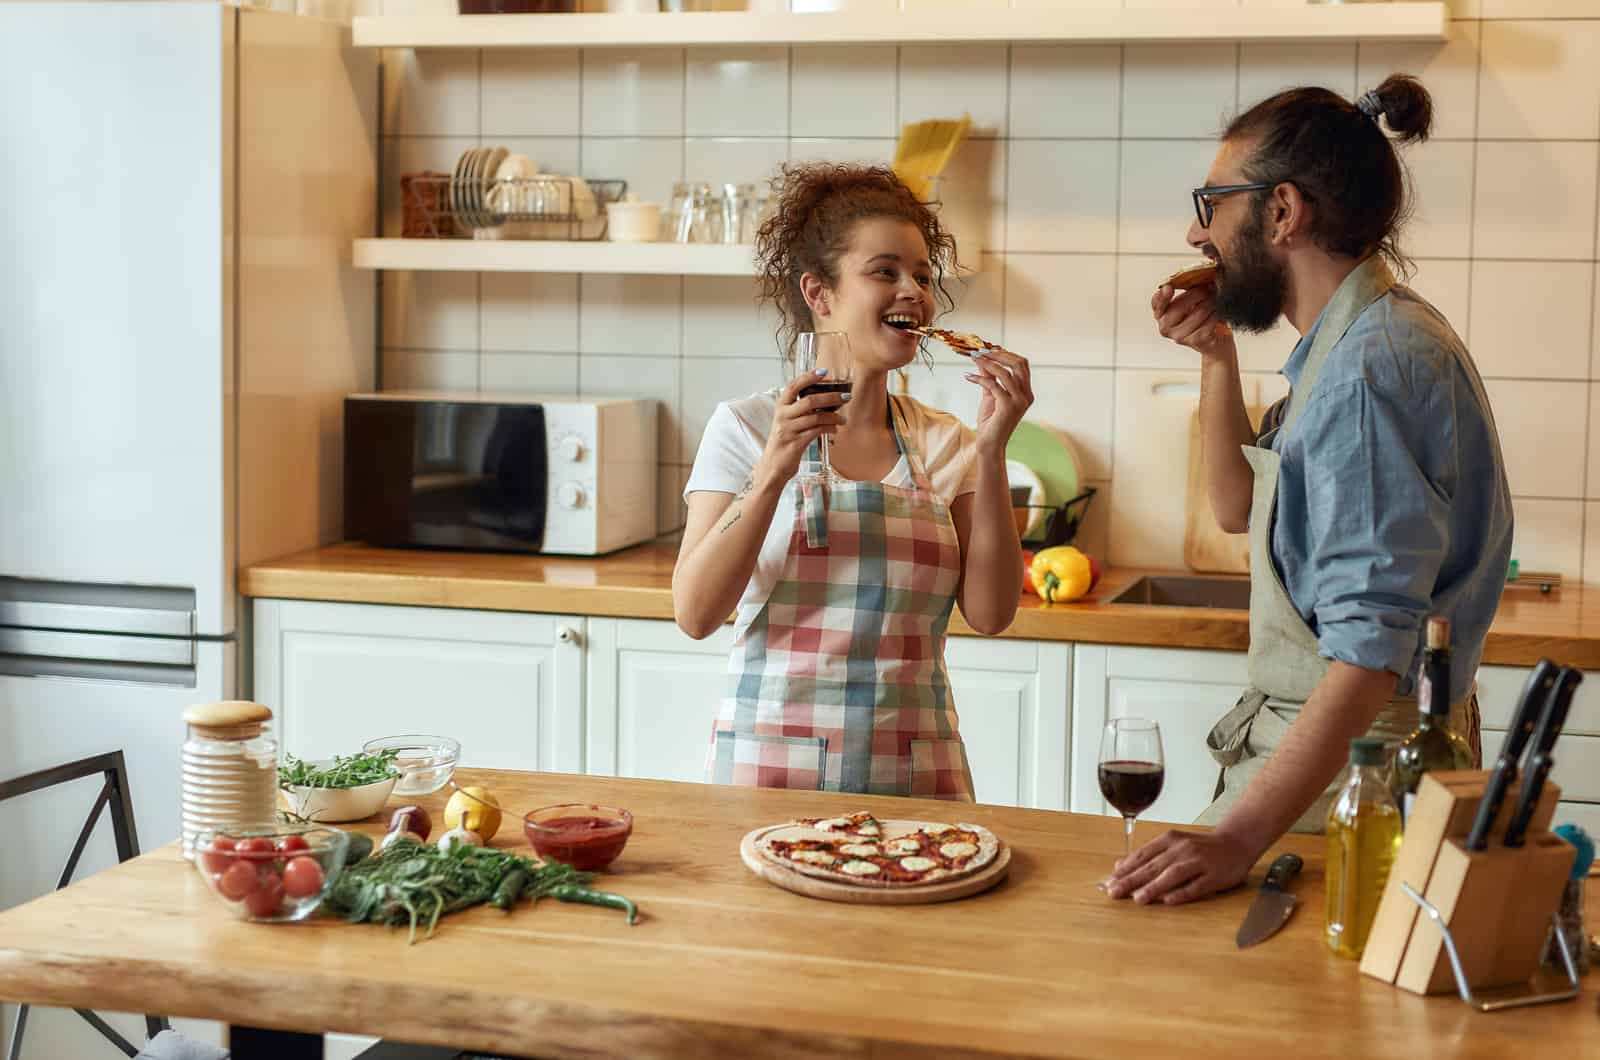 coppia in cucina che parla e mangia la pizza